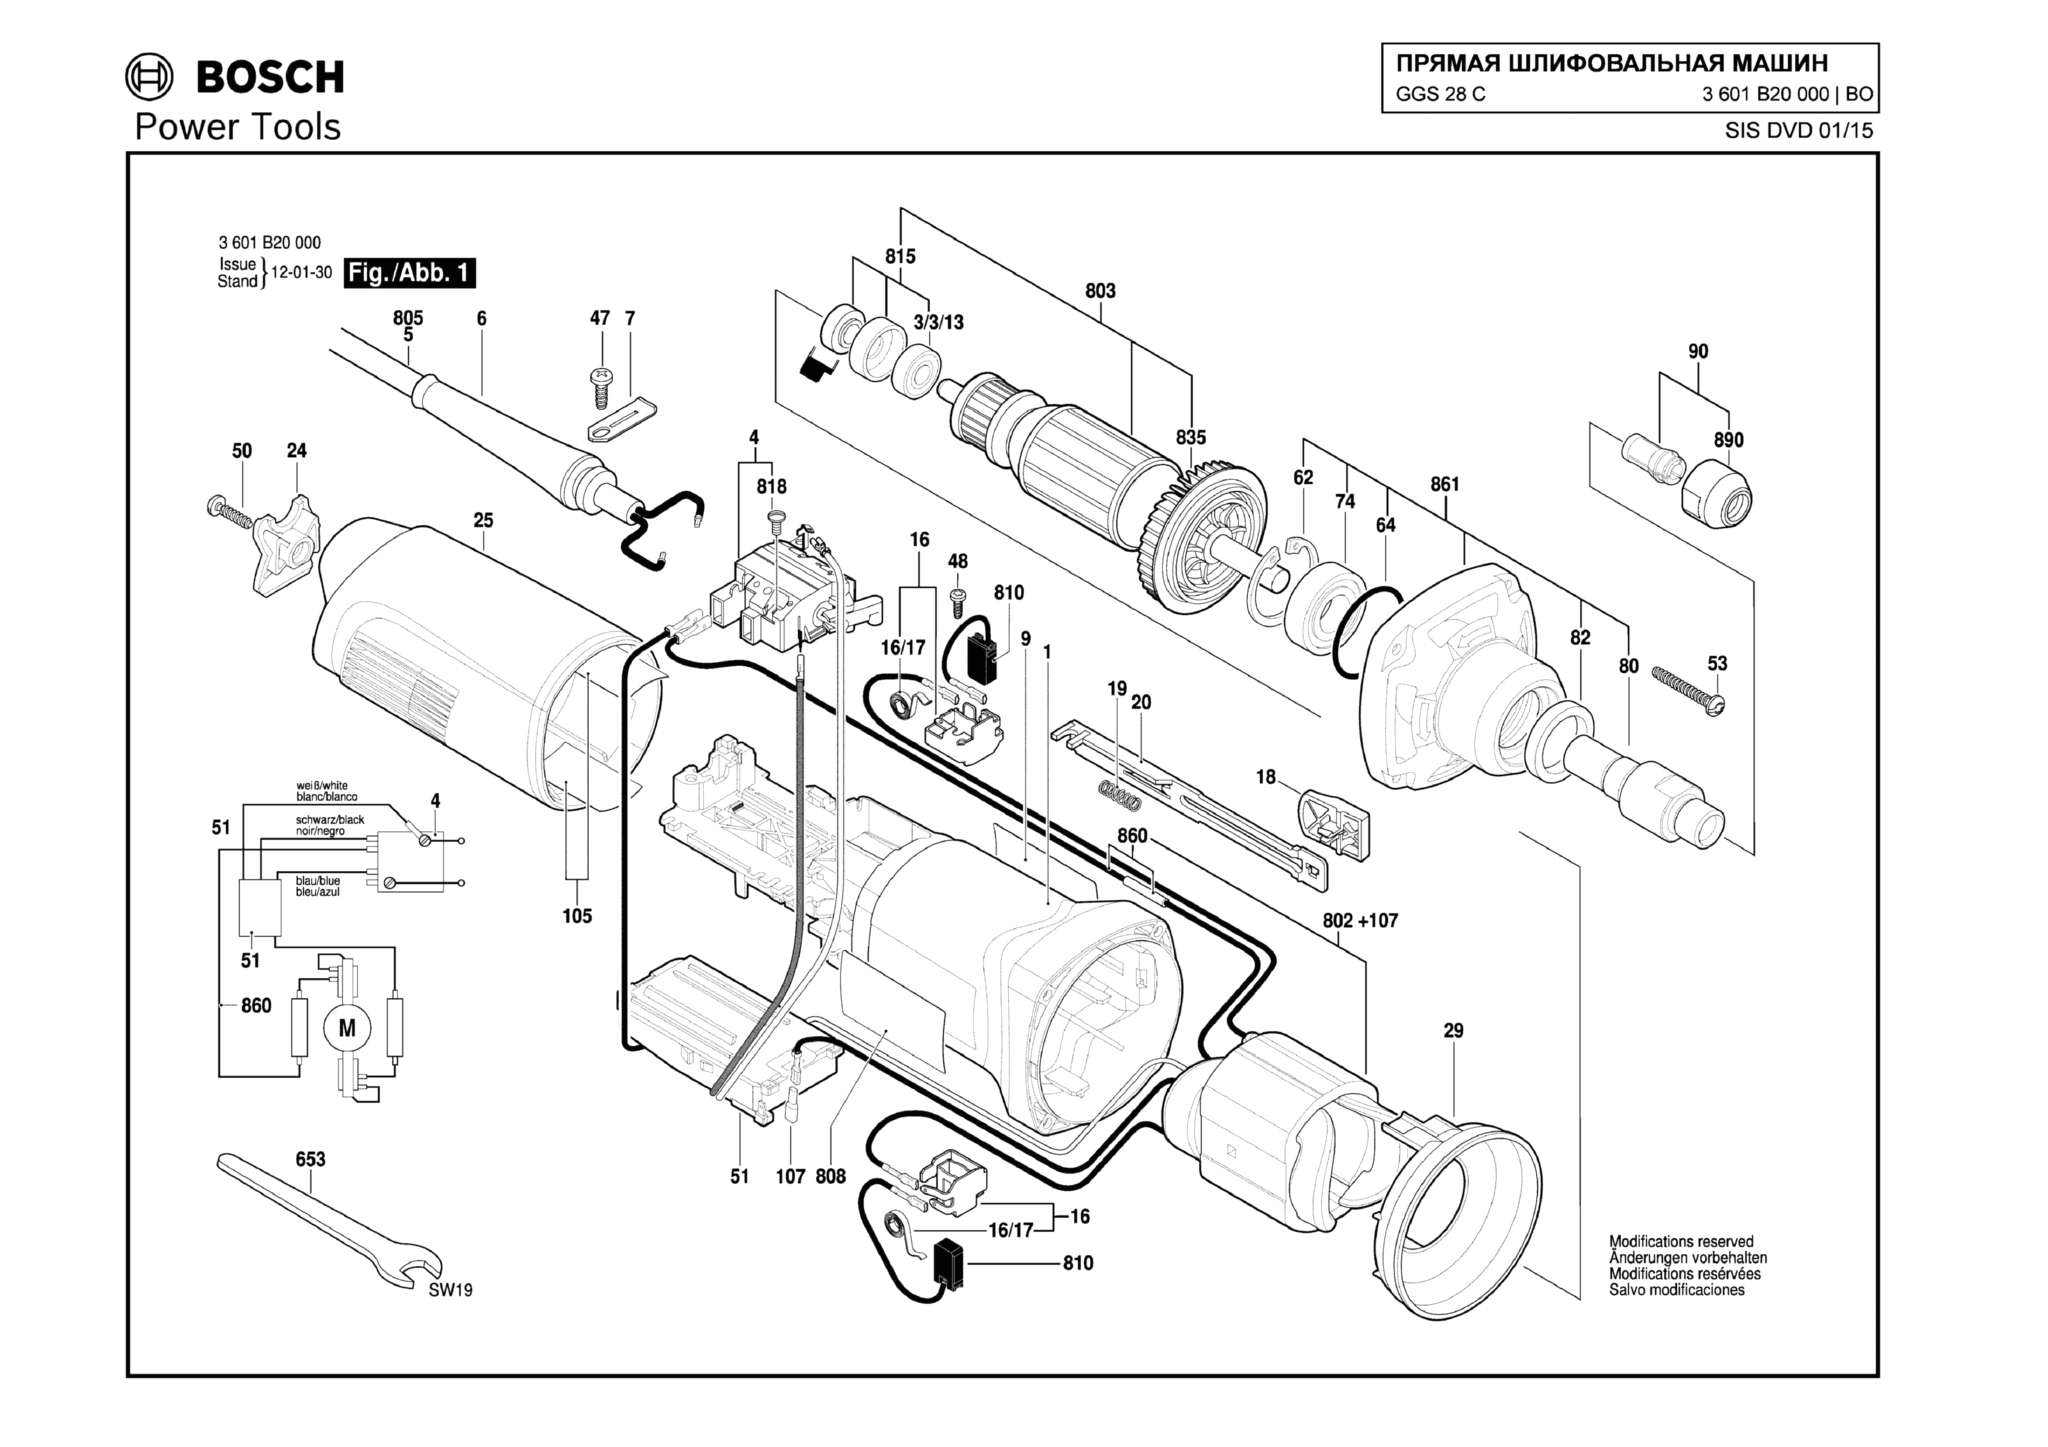 Запчасти, схема и деталировка Bosch GGS 28 C (ТИП 3601B20000)